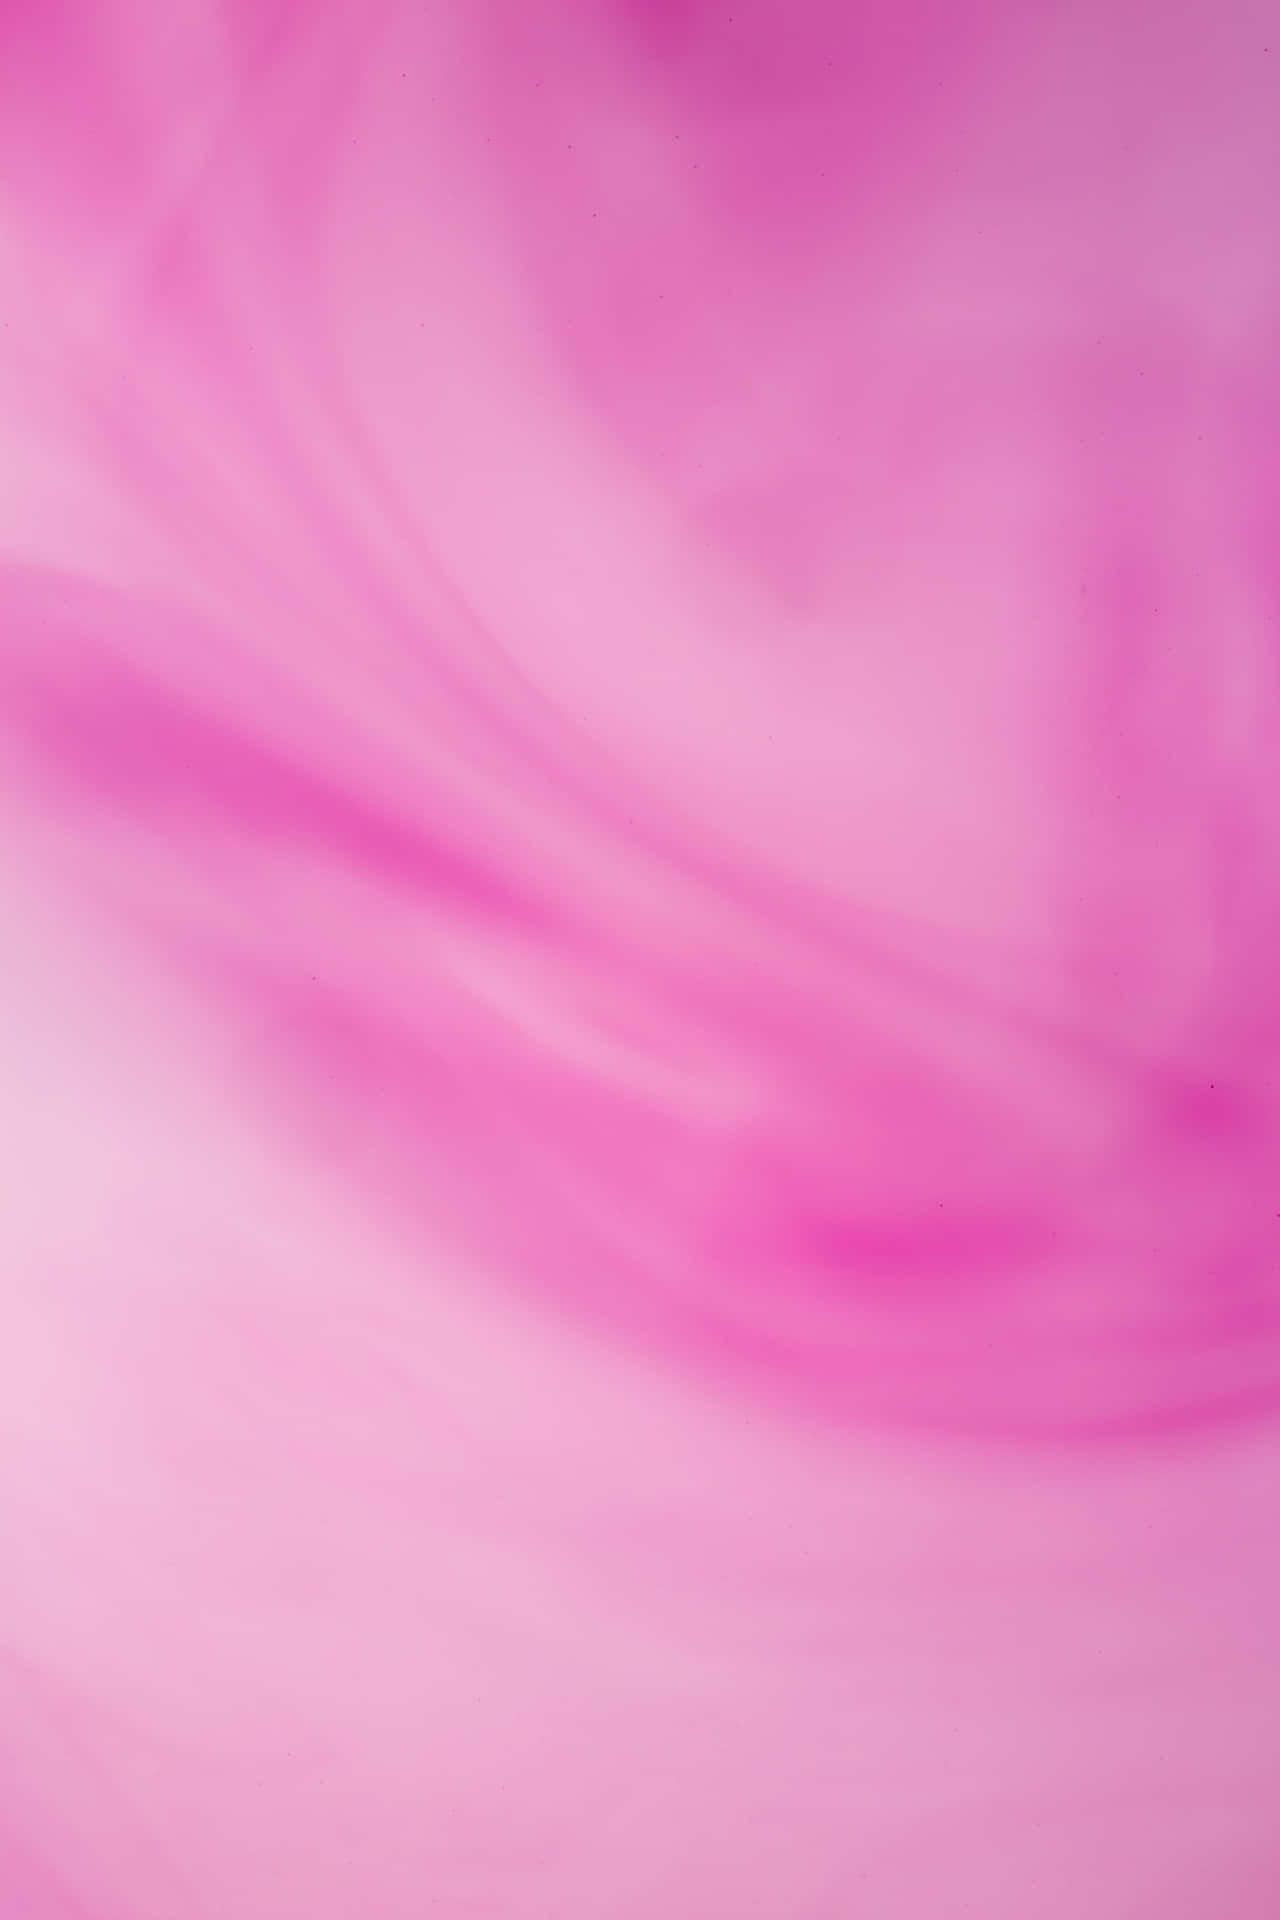 Pink Gradient Background 3840 X 5760